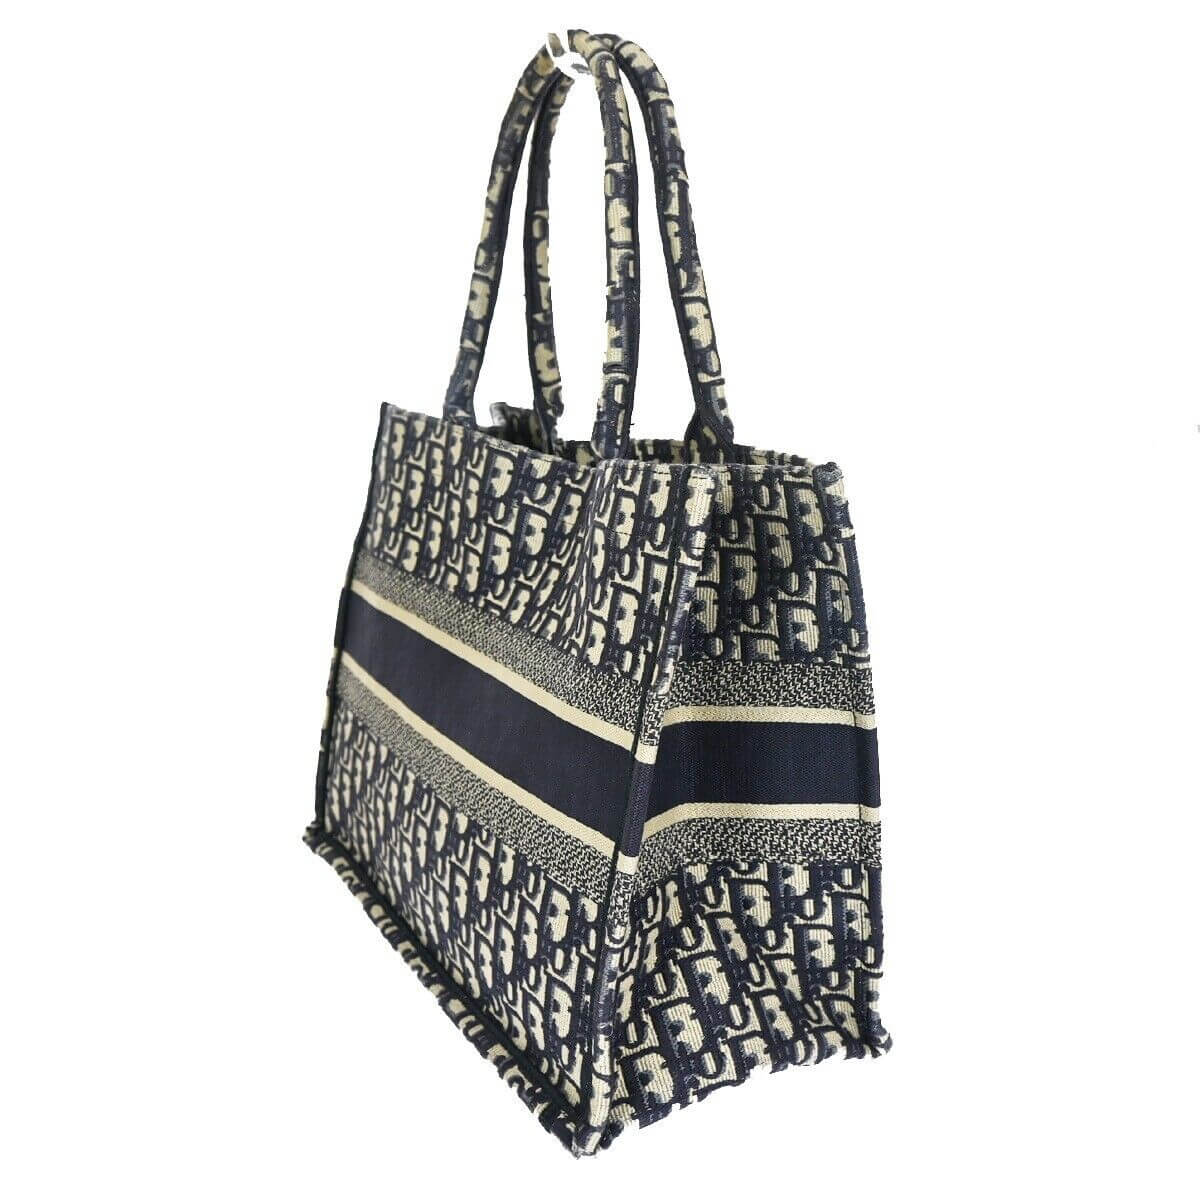 Dior Tote Book Bag in Tela Dior Oblique - Montevago Luxury Bags